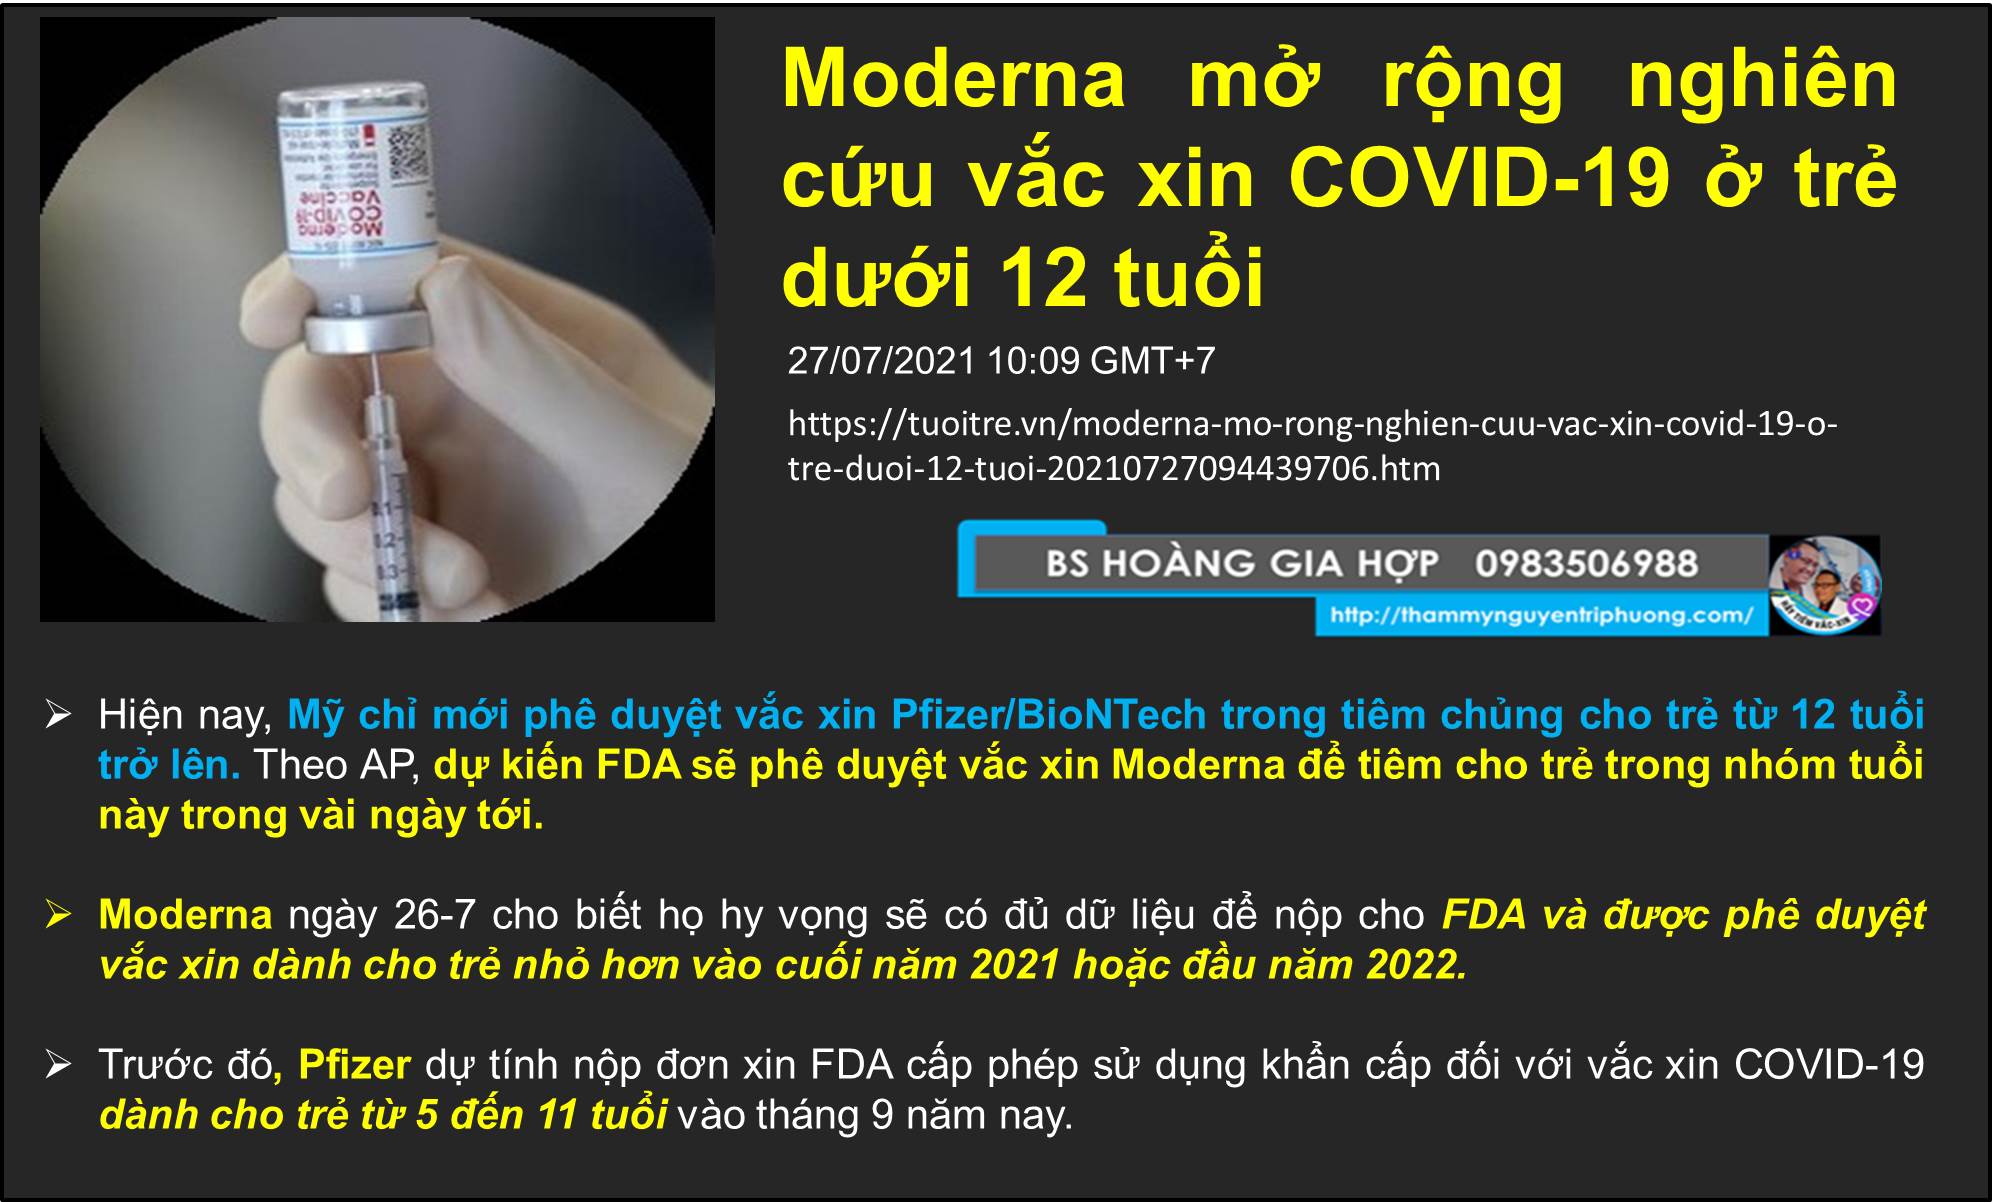 Moderna mở rộng nghiên cứu vắc xin COVID-19 ở trẻ dưới 12 tuổi